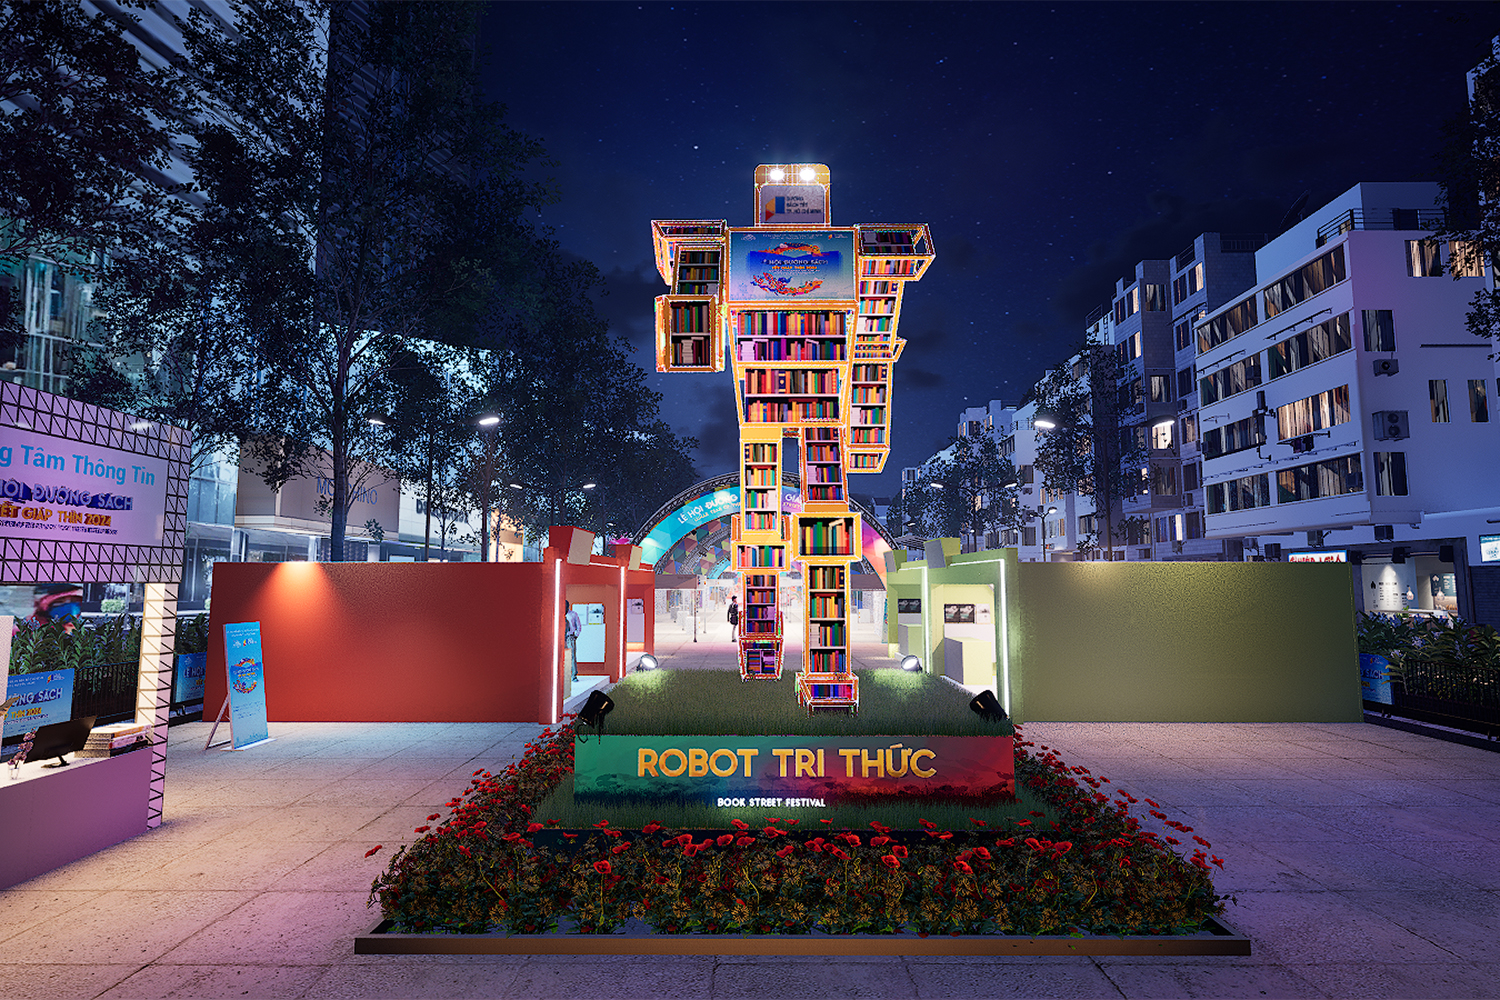 Mô hình robot bằng sách cao bảy mét chào đón du khách đến sự kiện.